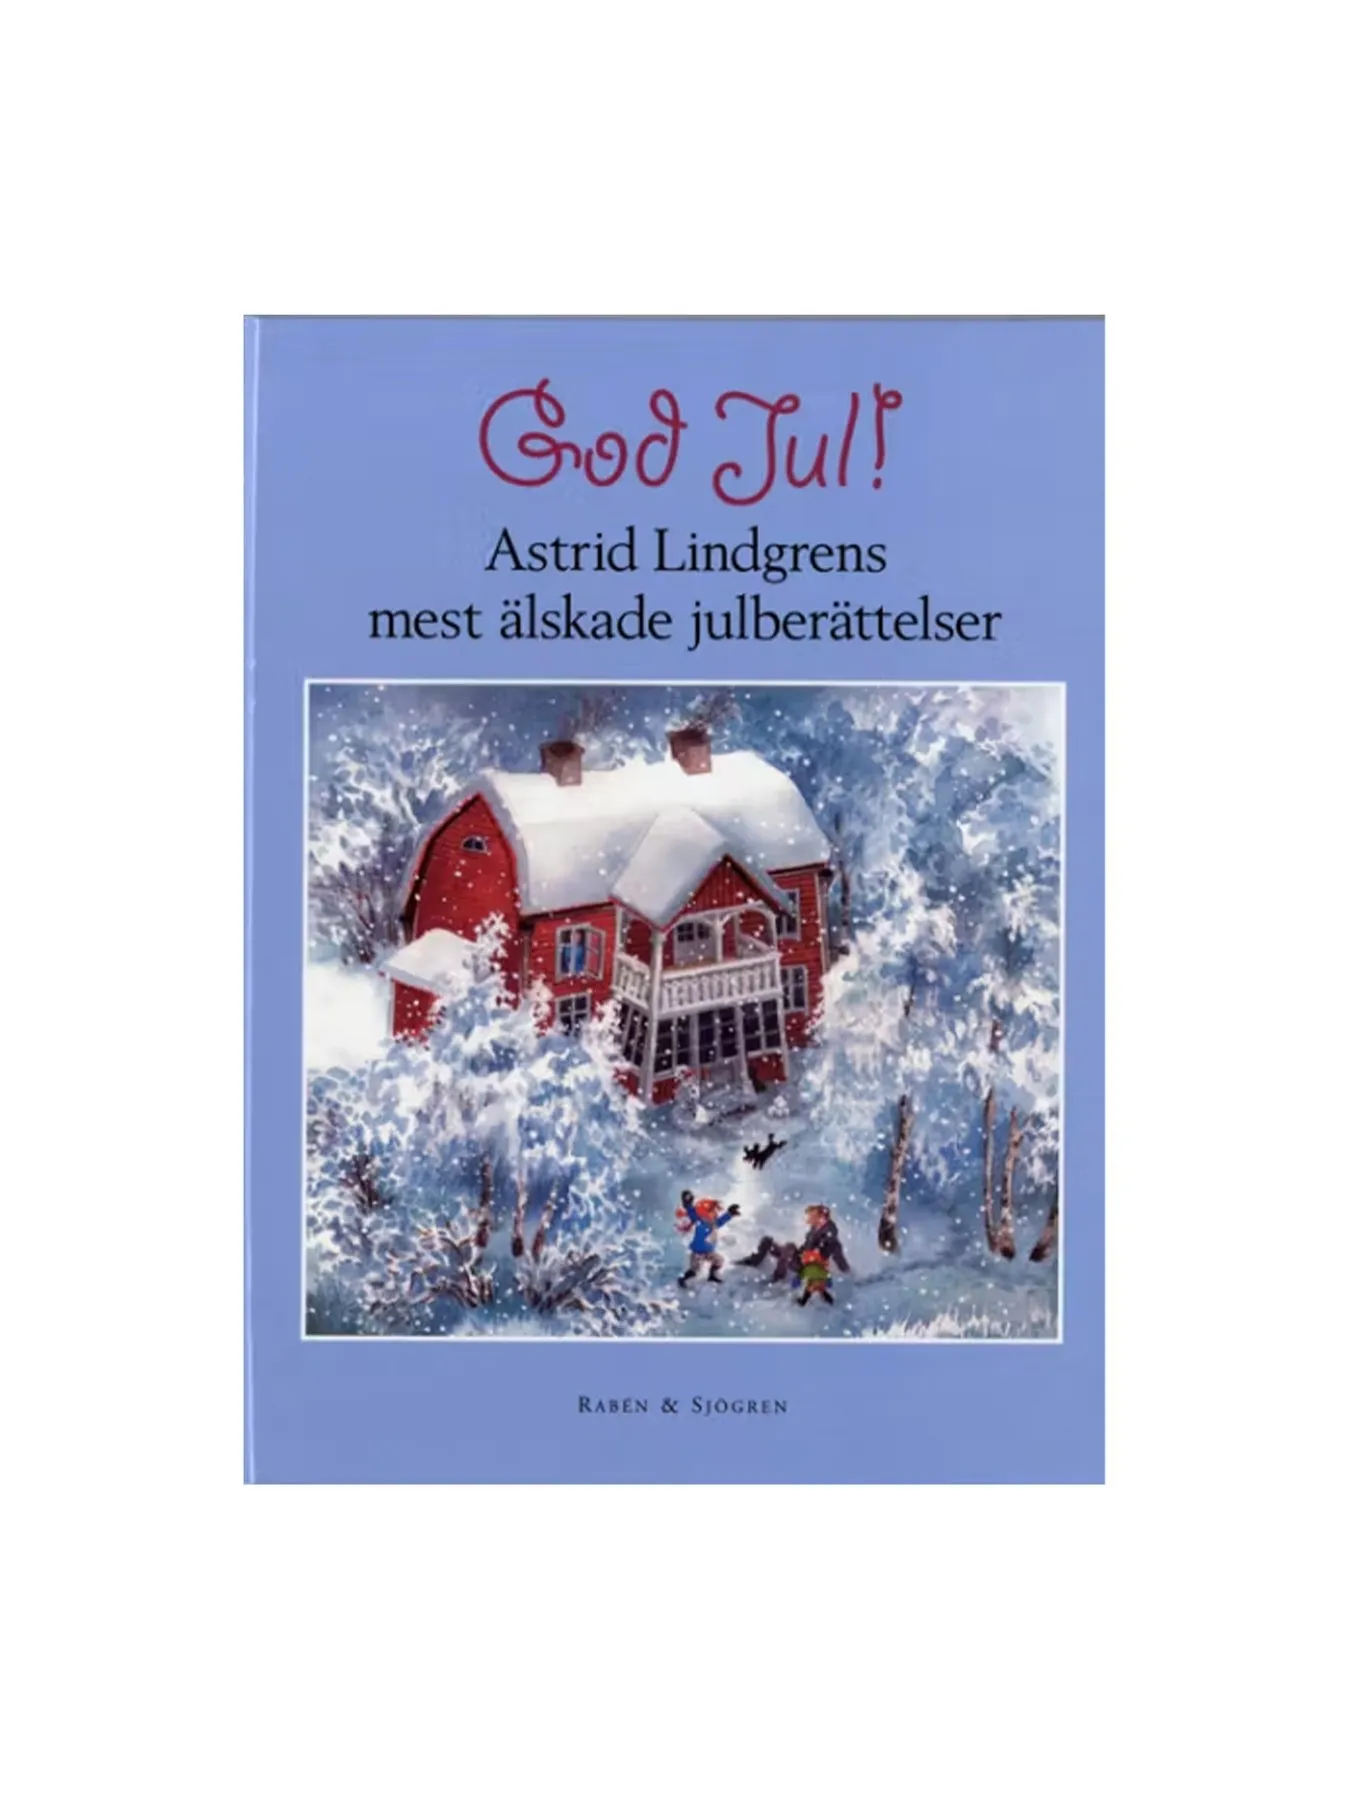 God jul i stugan (Swedish)